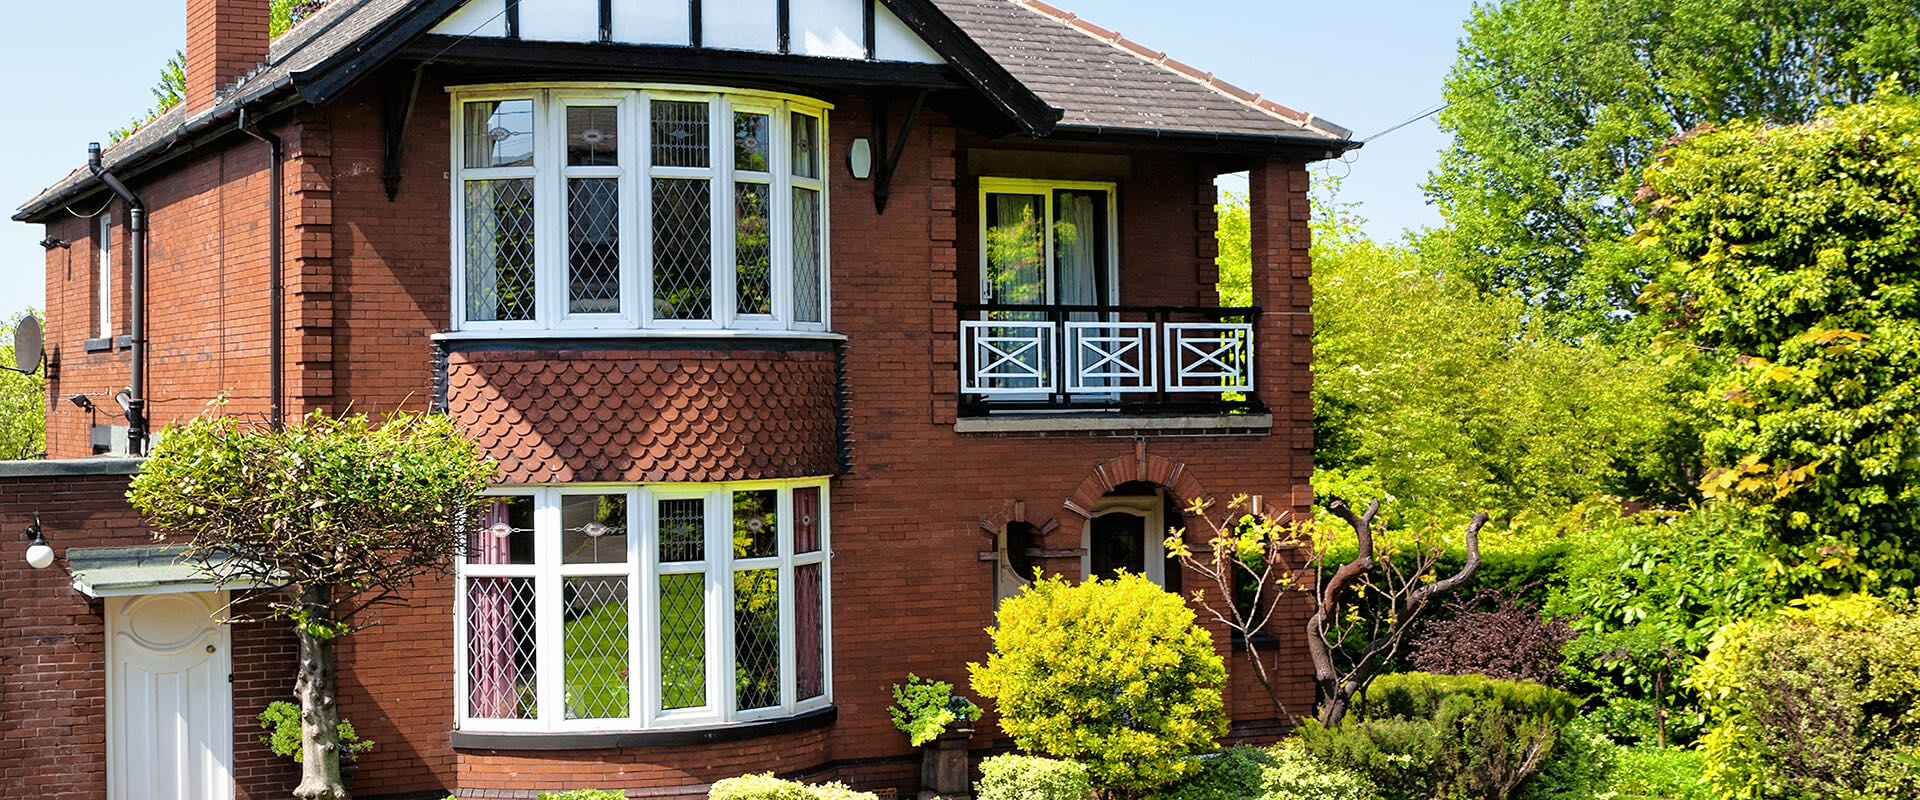 Double Glazing Prices Essex